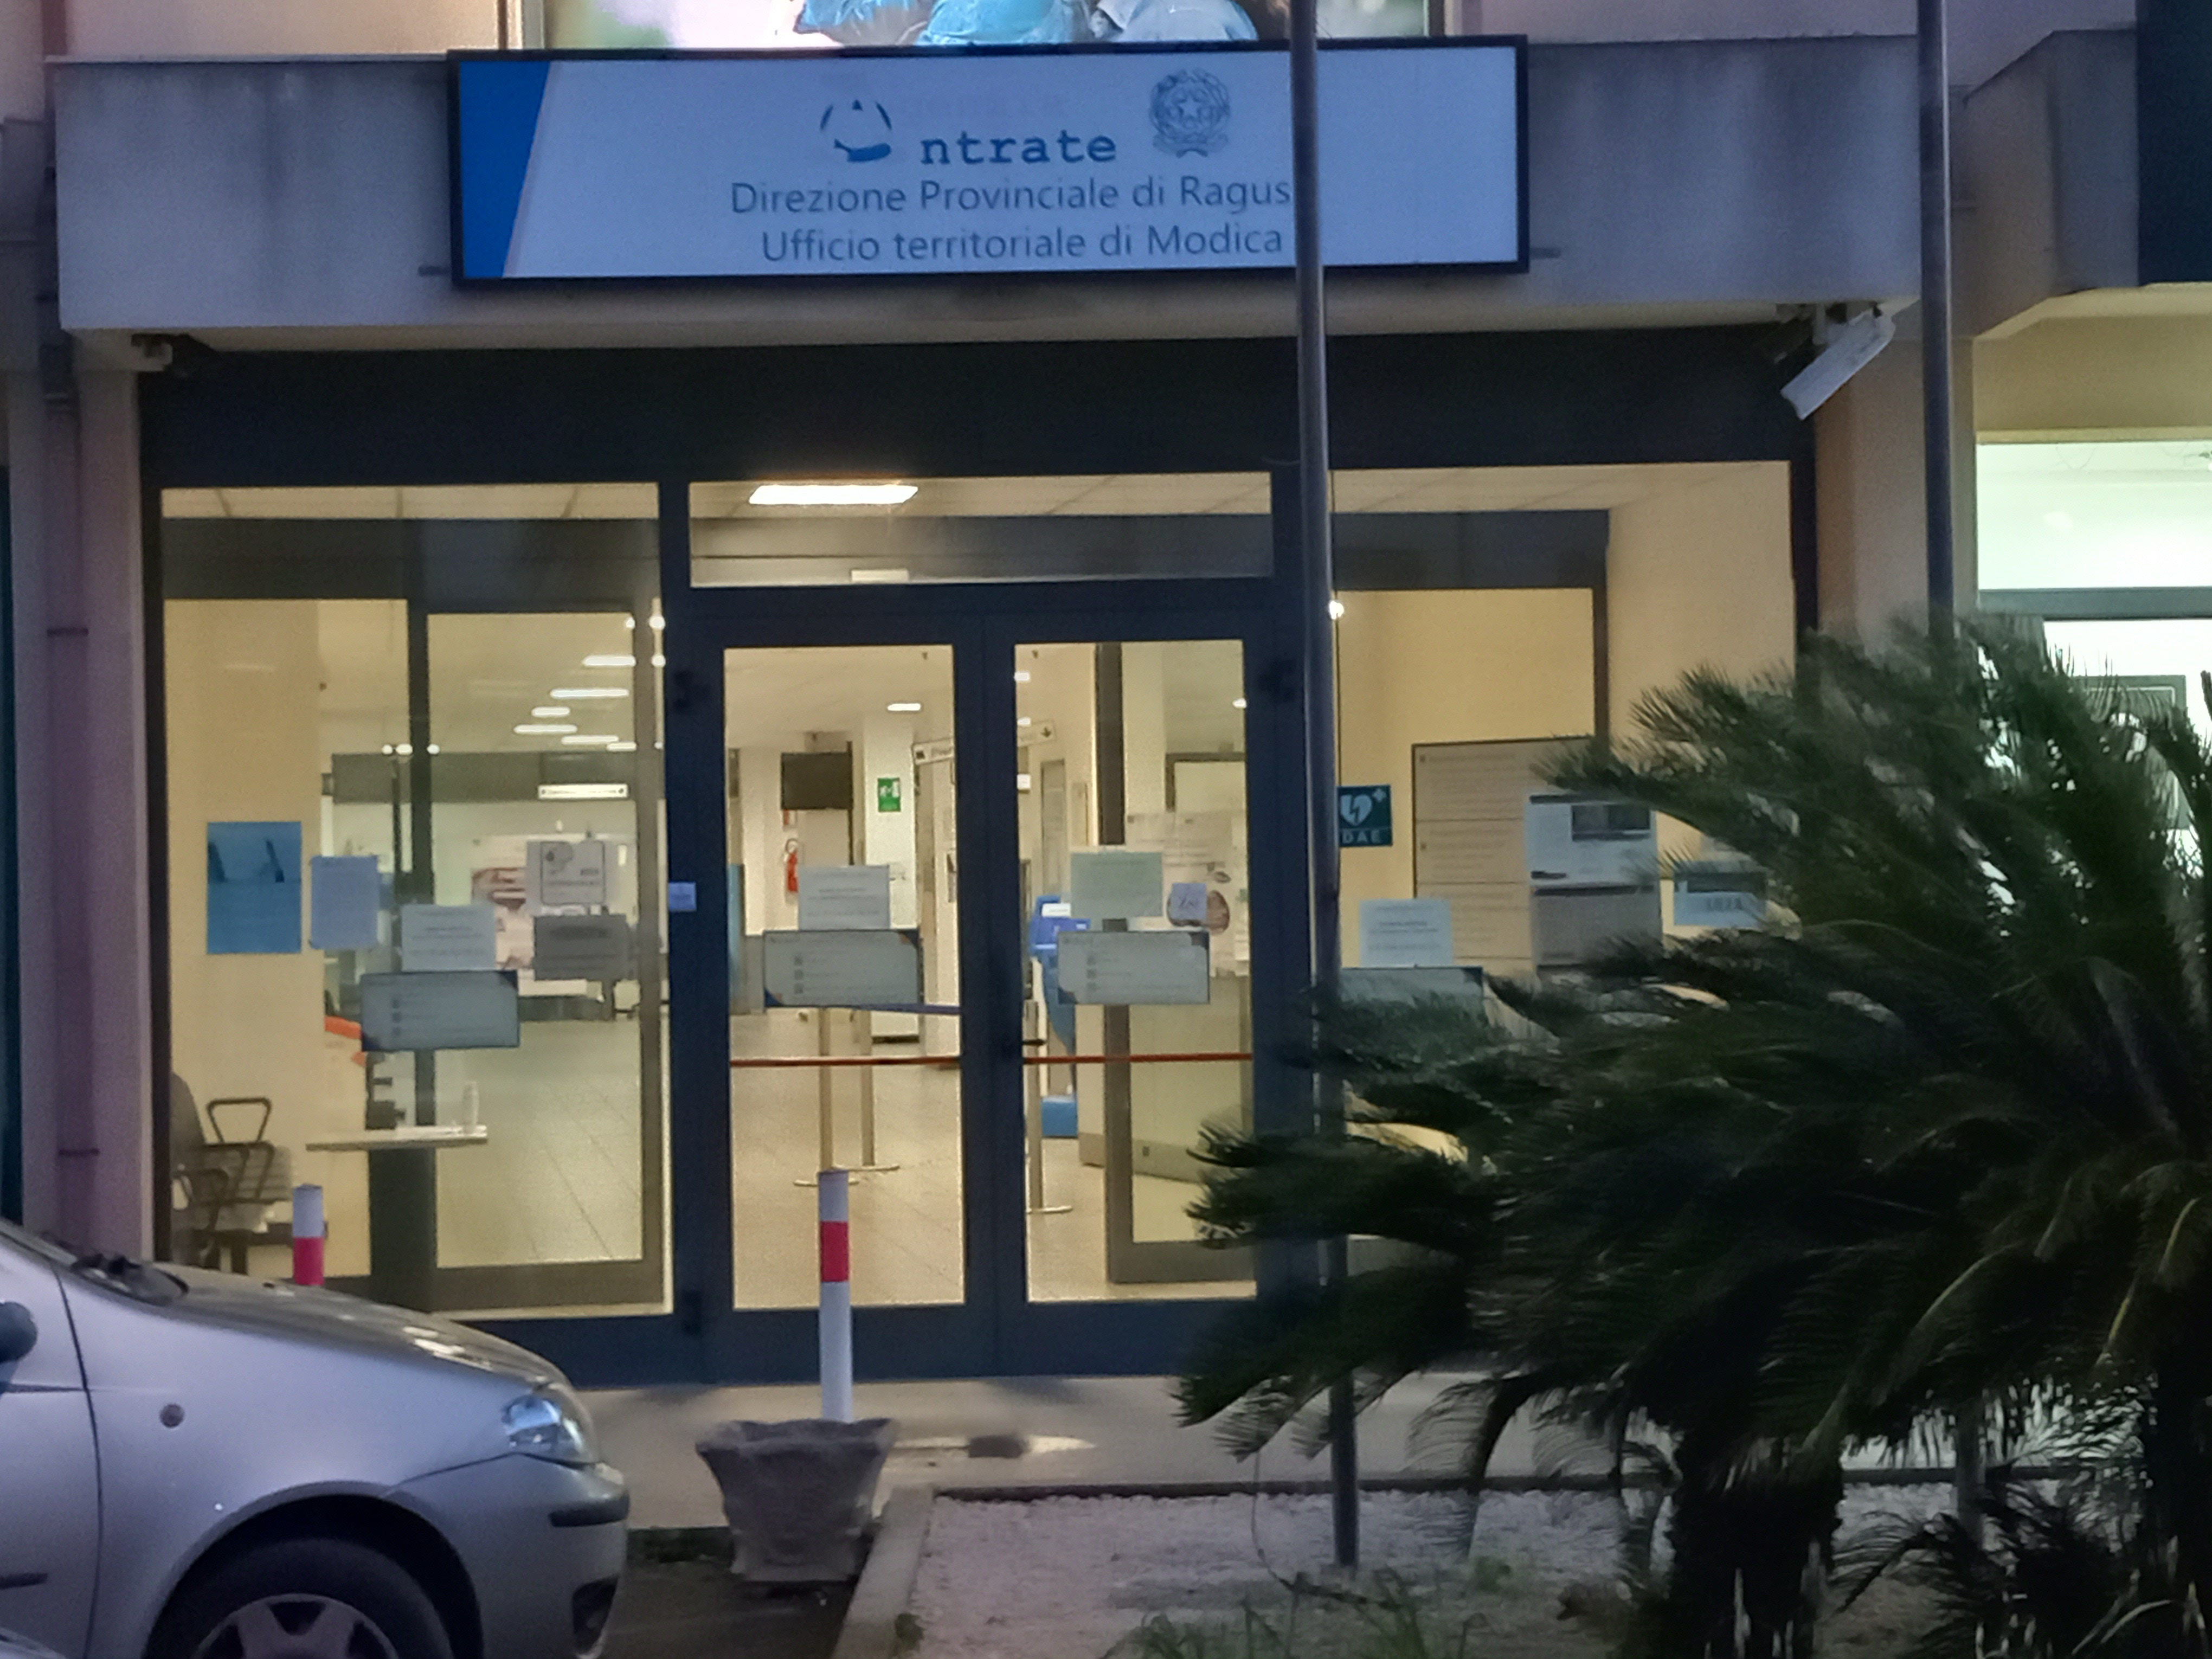 Ufficio Agenzia entrate di Modica, pochi dipendenti e disagi: chiusura in vista?